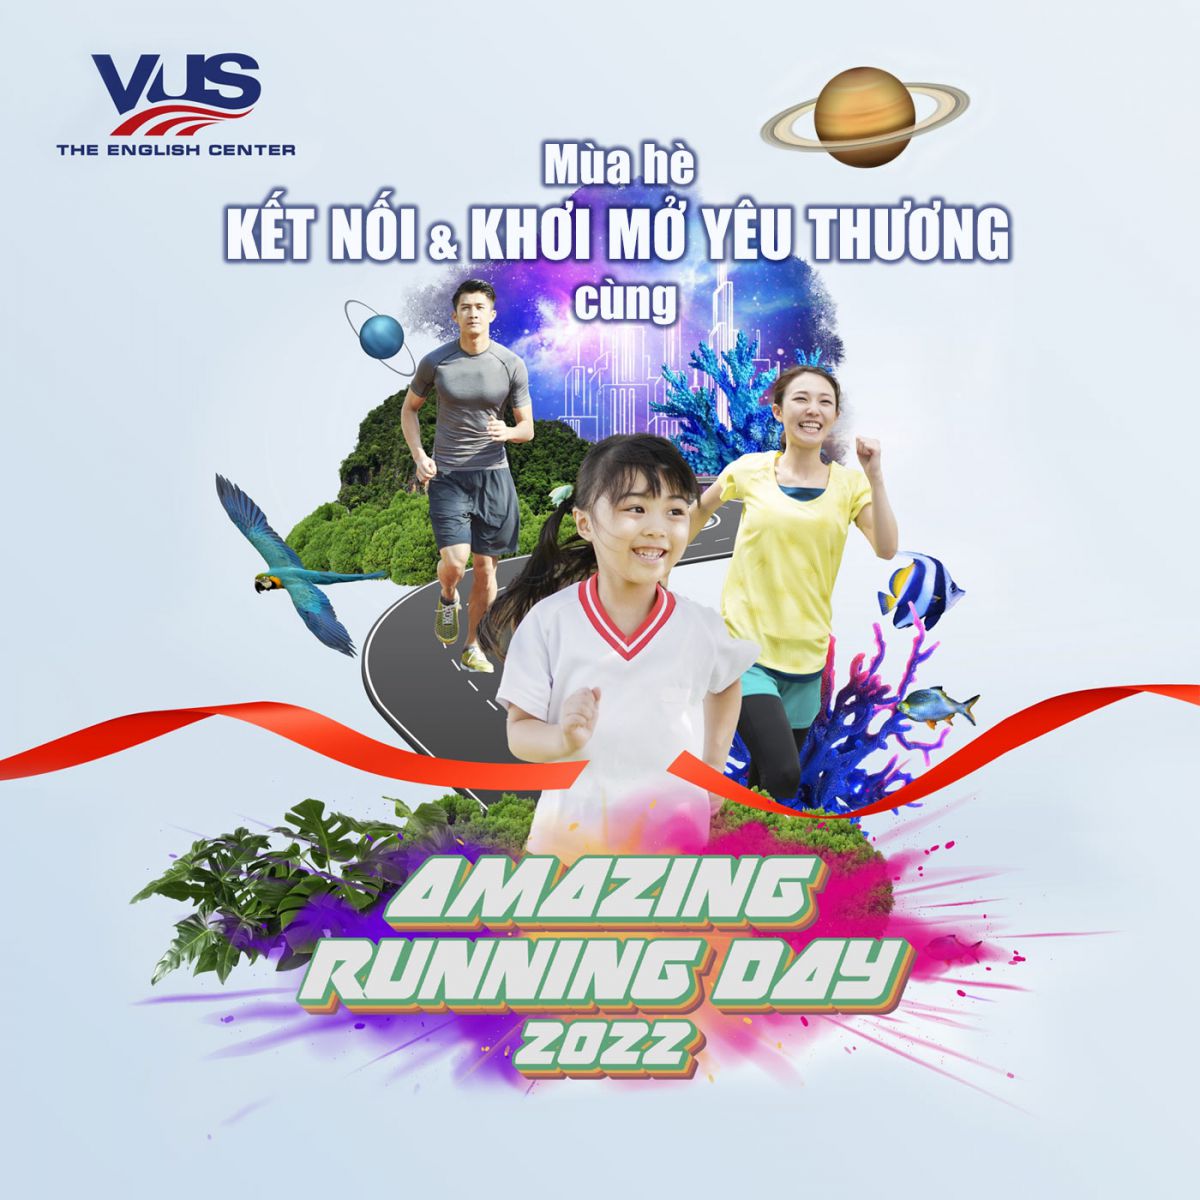 Mùa hè kết nối và khơi mở yêu thương cùng VUS Amazing Running Day 2022 - Ảnh 1